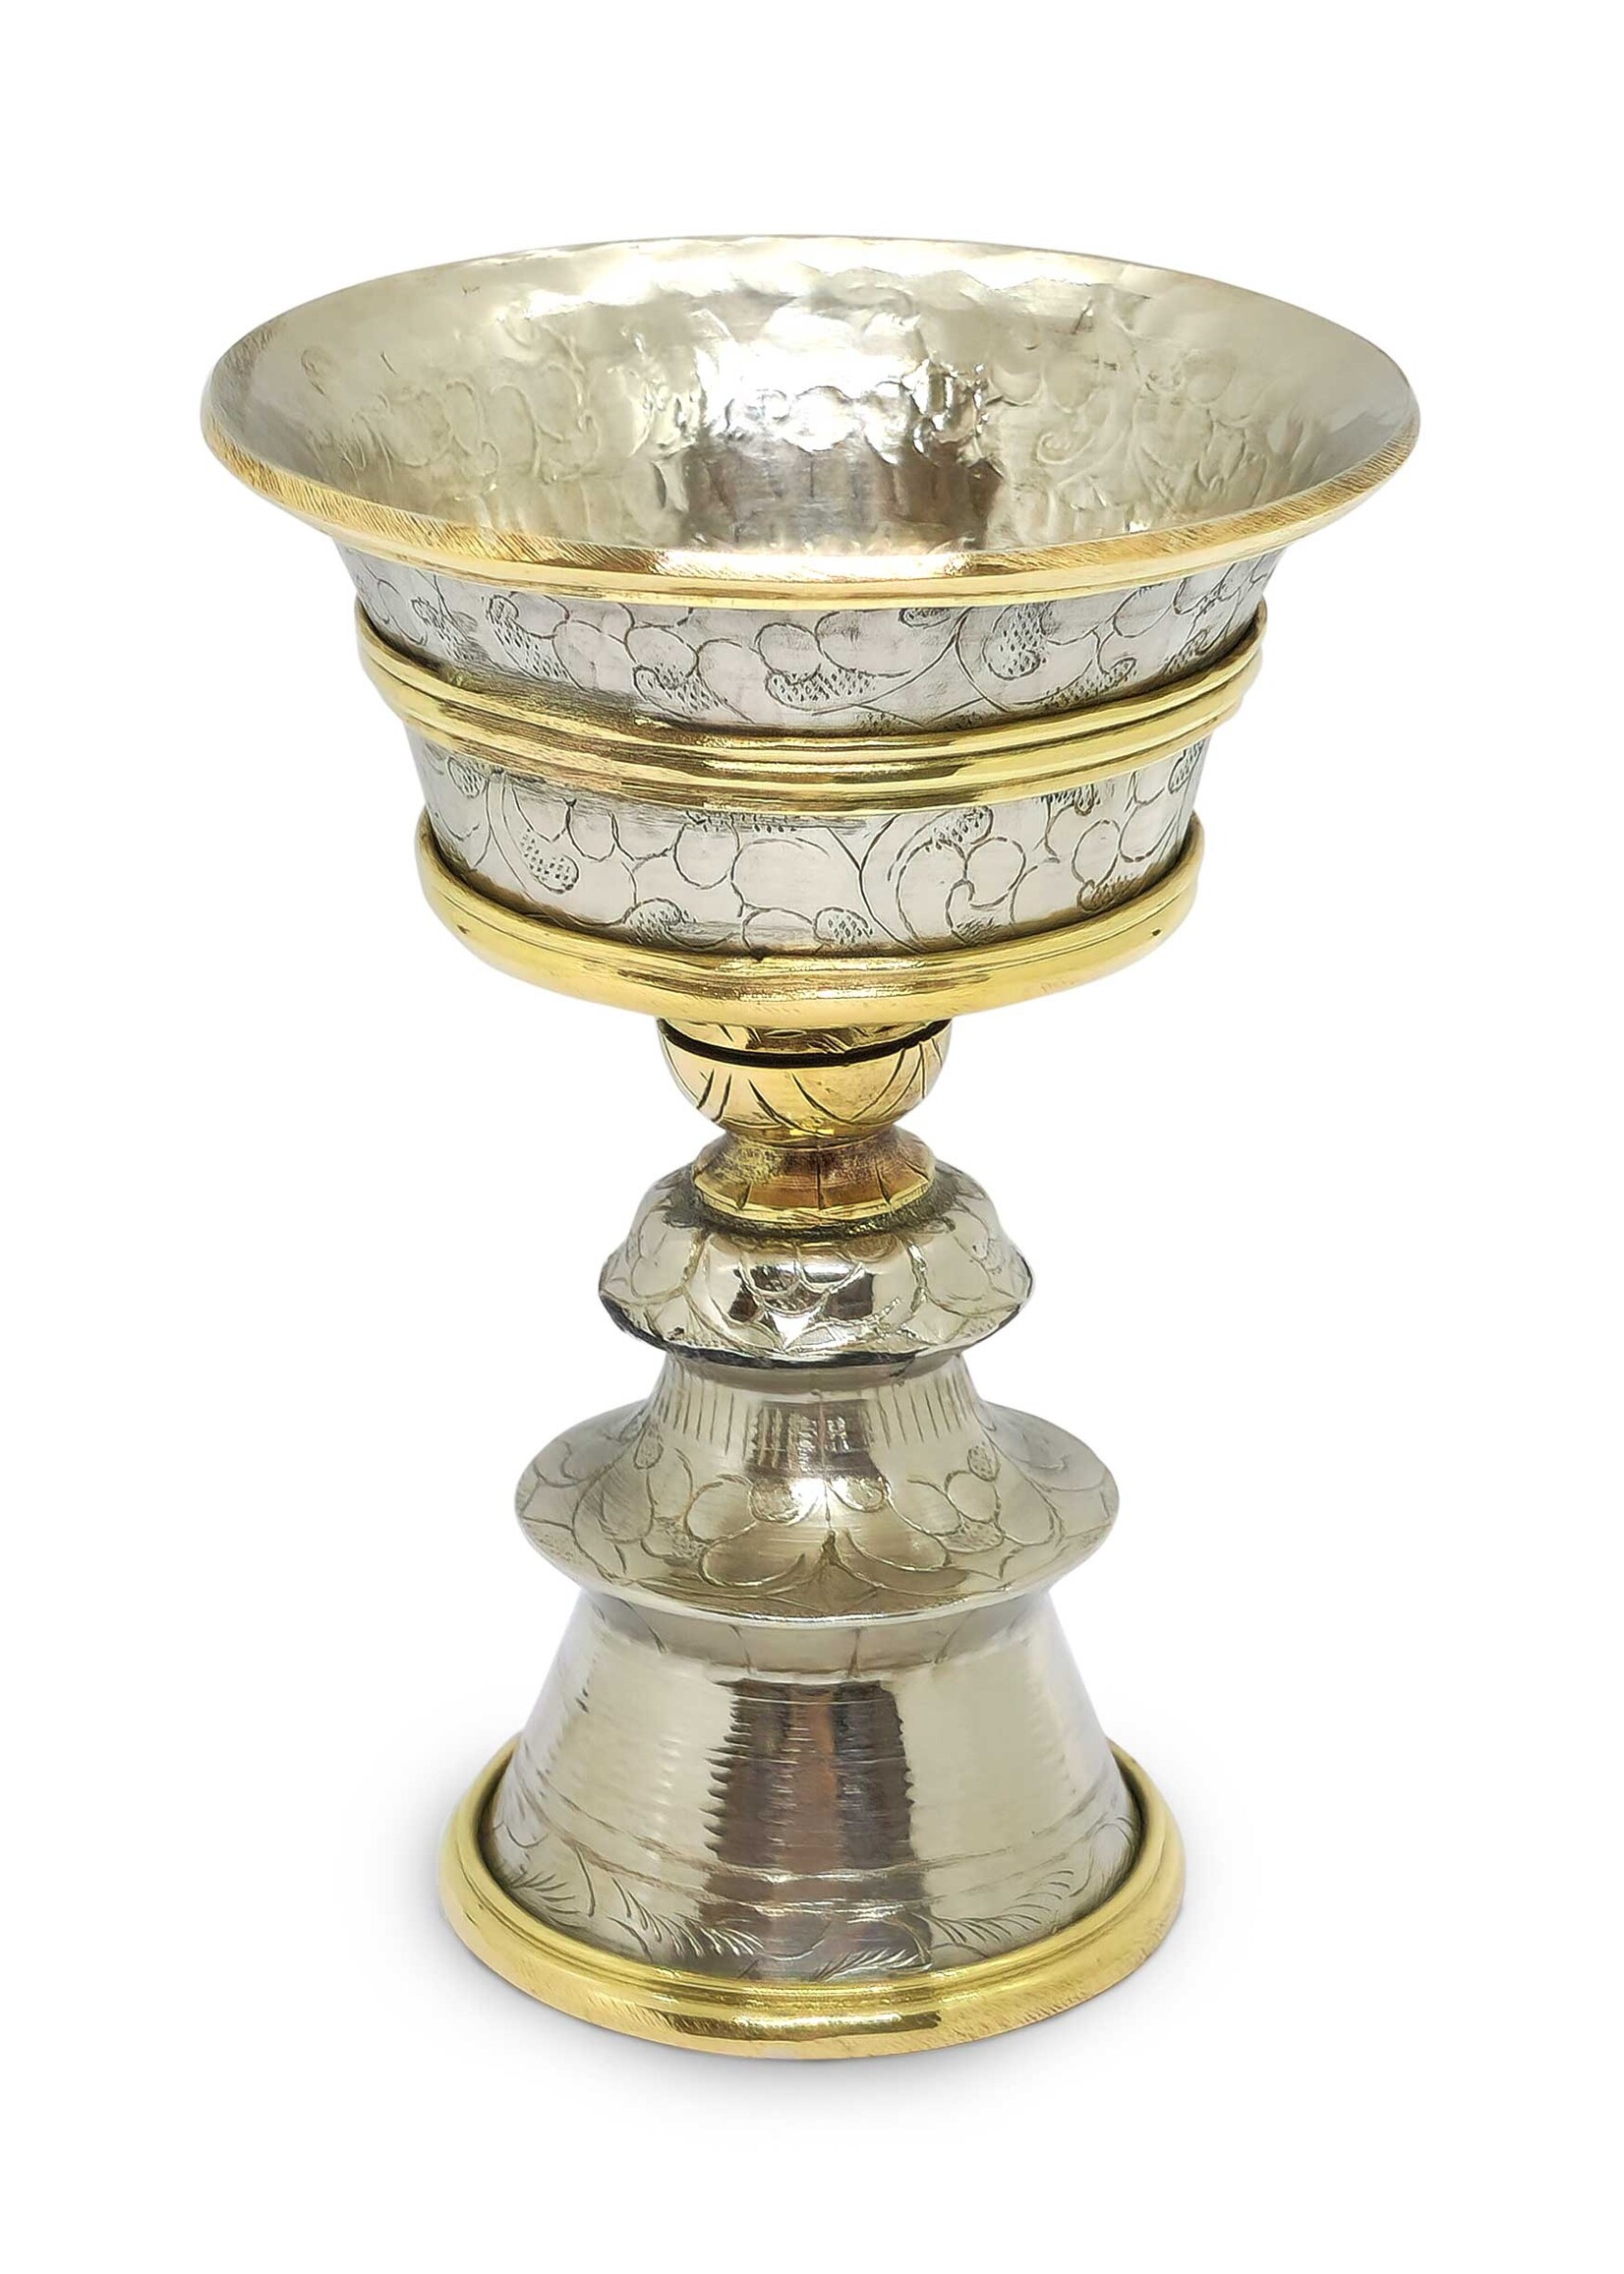 Tibetan Butter Lamp, Made of Brass, 11cm